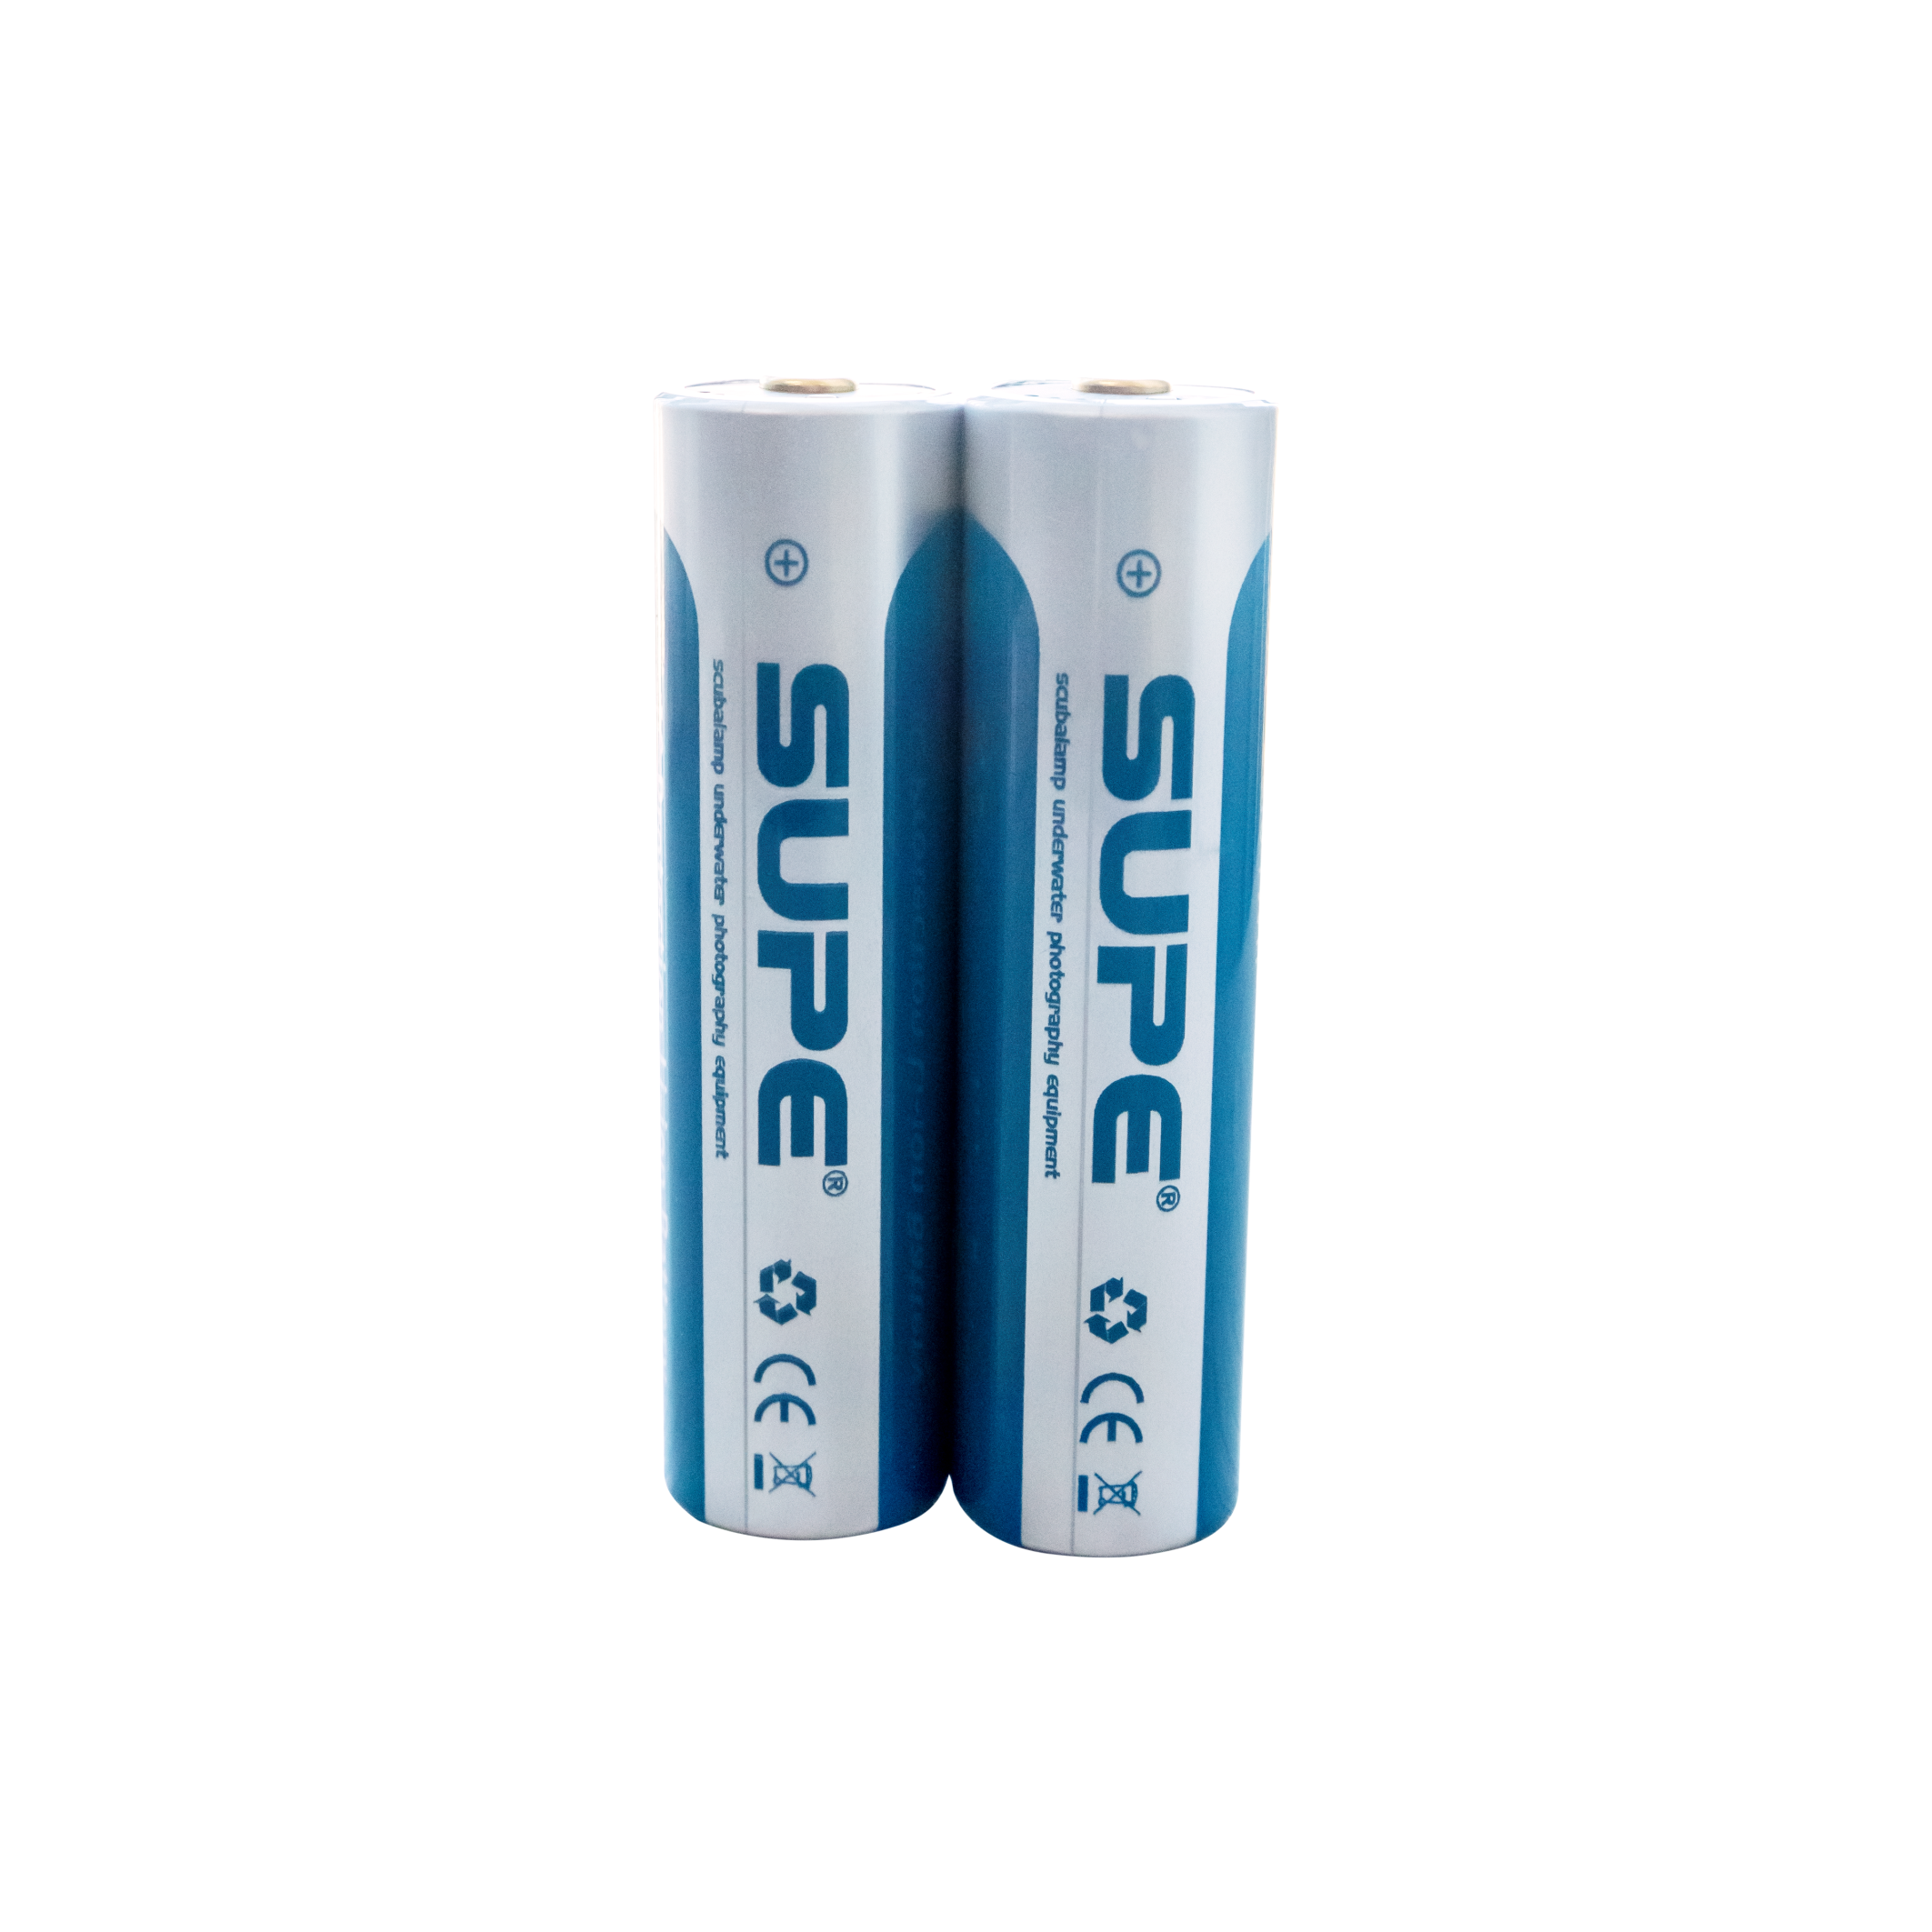 Batterie Lithium 18650 (avec téton borne+) - Mares - Scubawind